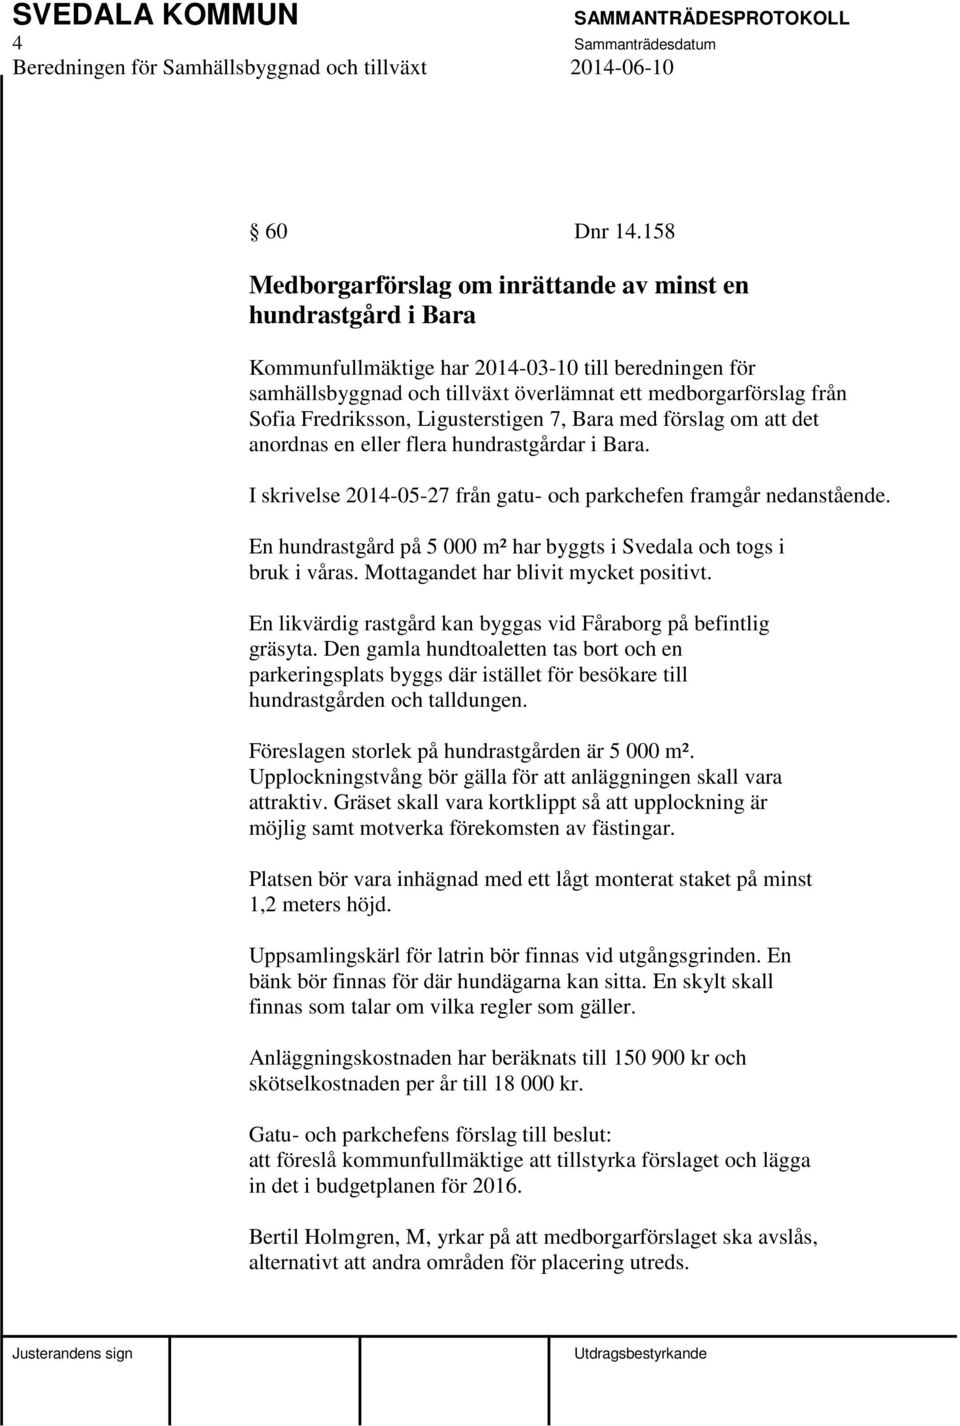 Fredriksson, Ligusterstigen 7, Bara med förslag om att det anordnas en eller flera hundrastgårdar i Bara. I skrivelse 2014-05-27 från gatu- och parkchefen framgår nedanstående.